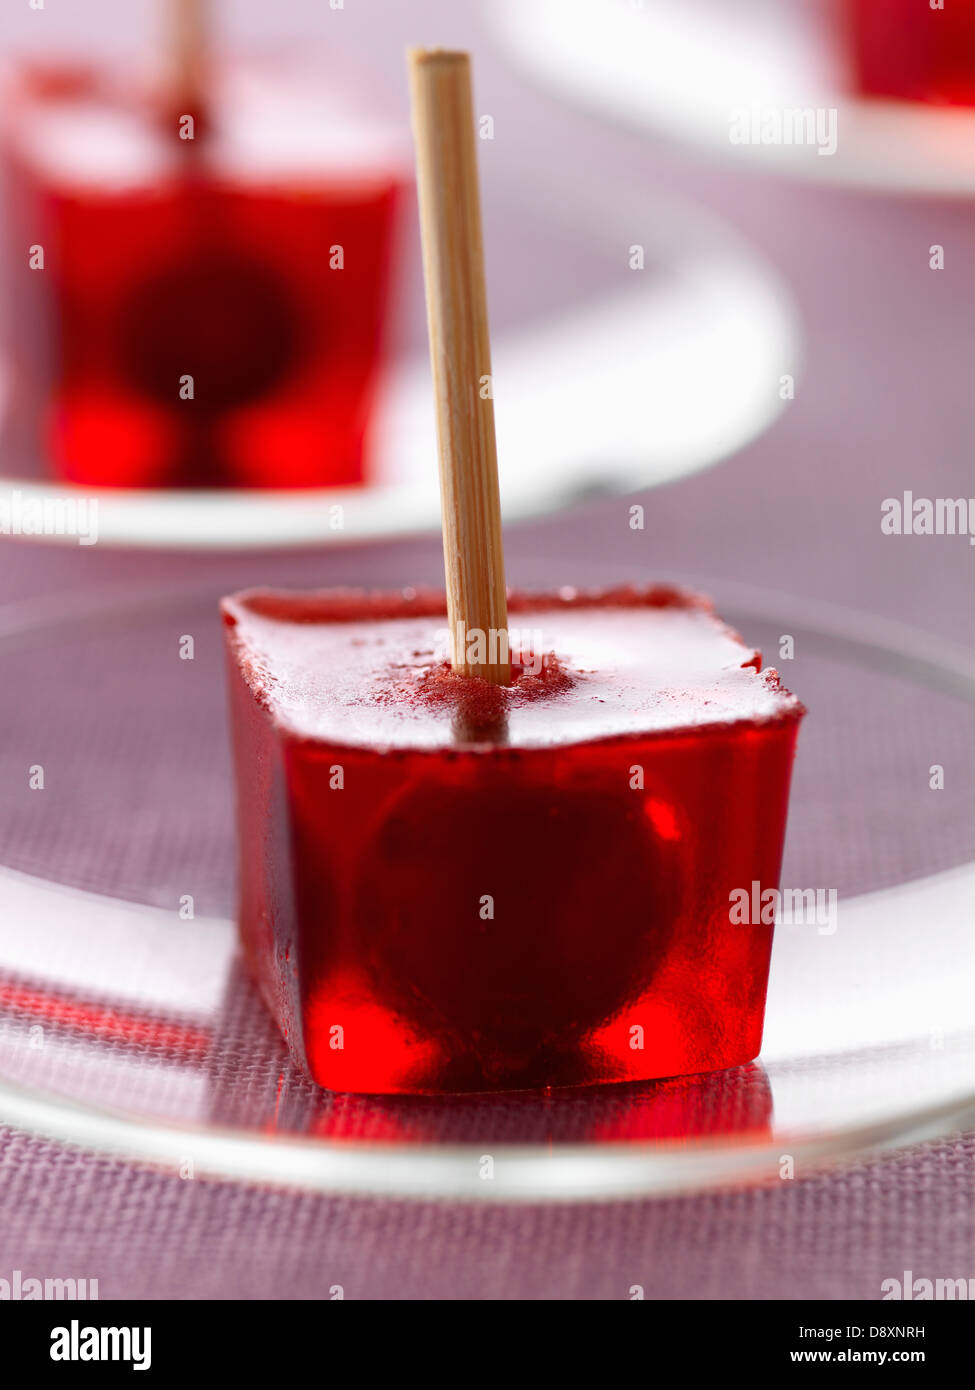 Griotte cherry immagini e fotografie stock ad alta risoluzione - Alamy